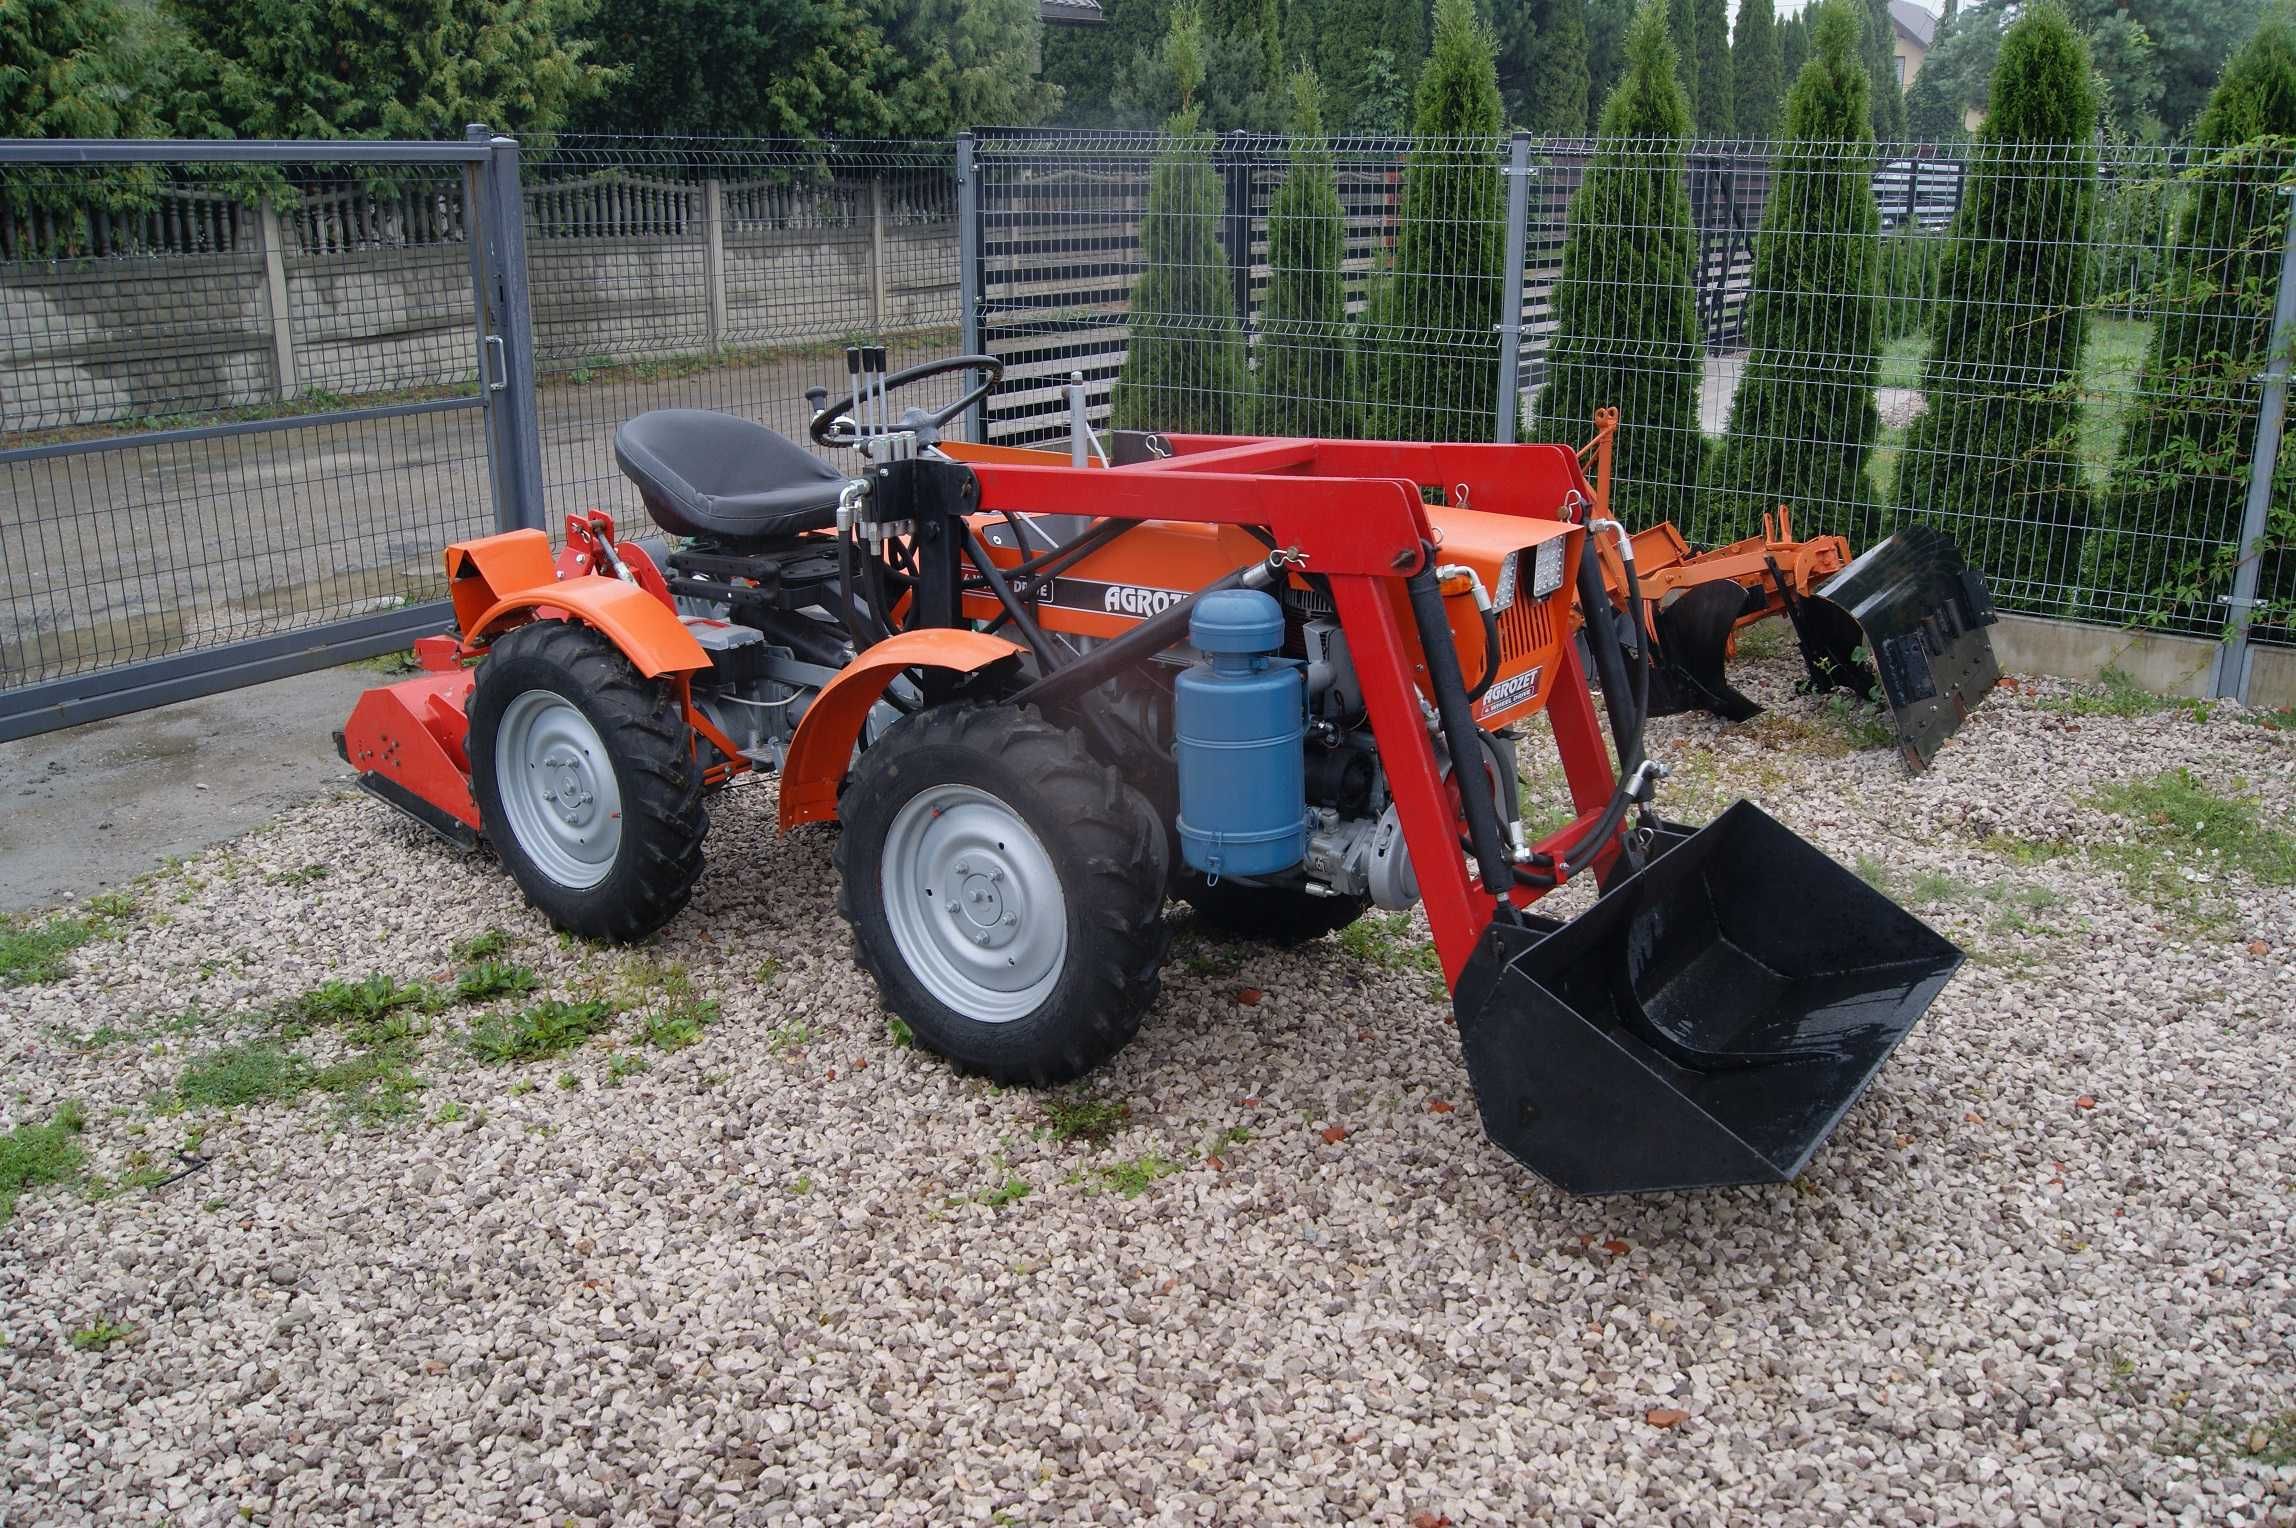 TZ-4K-14 traktorek ogrodniczy ładowarka zamiana tv521 kubota avant